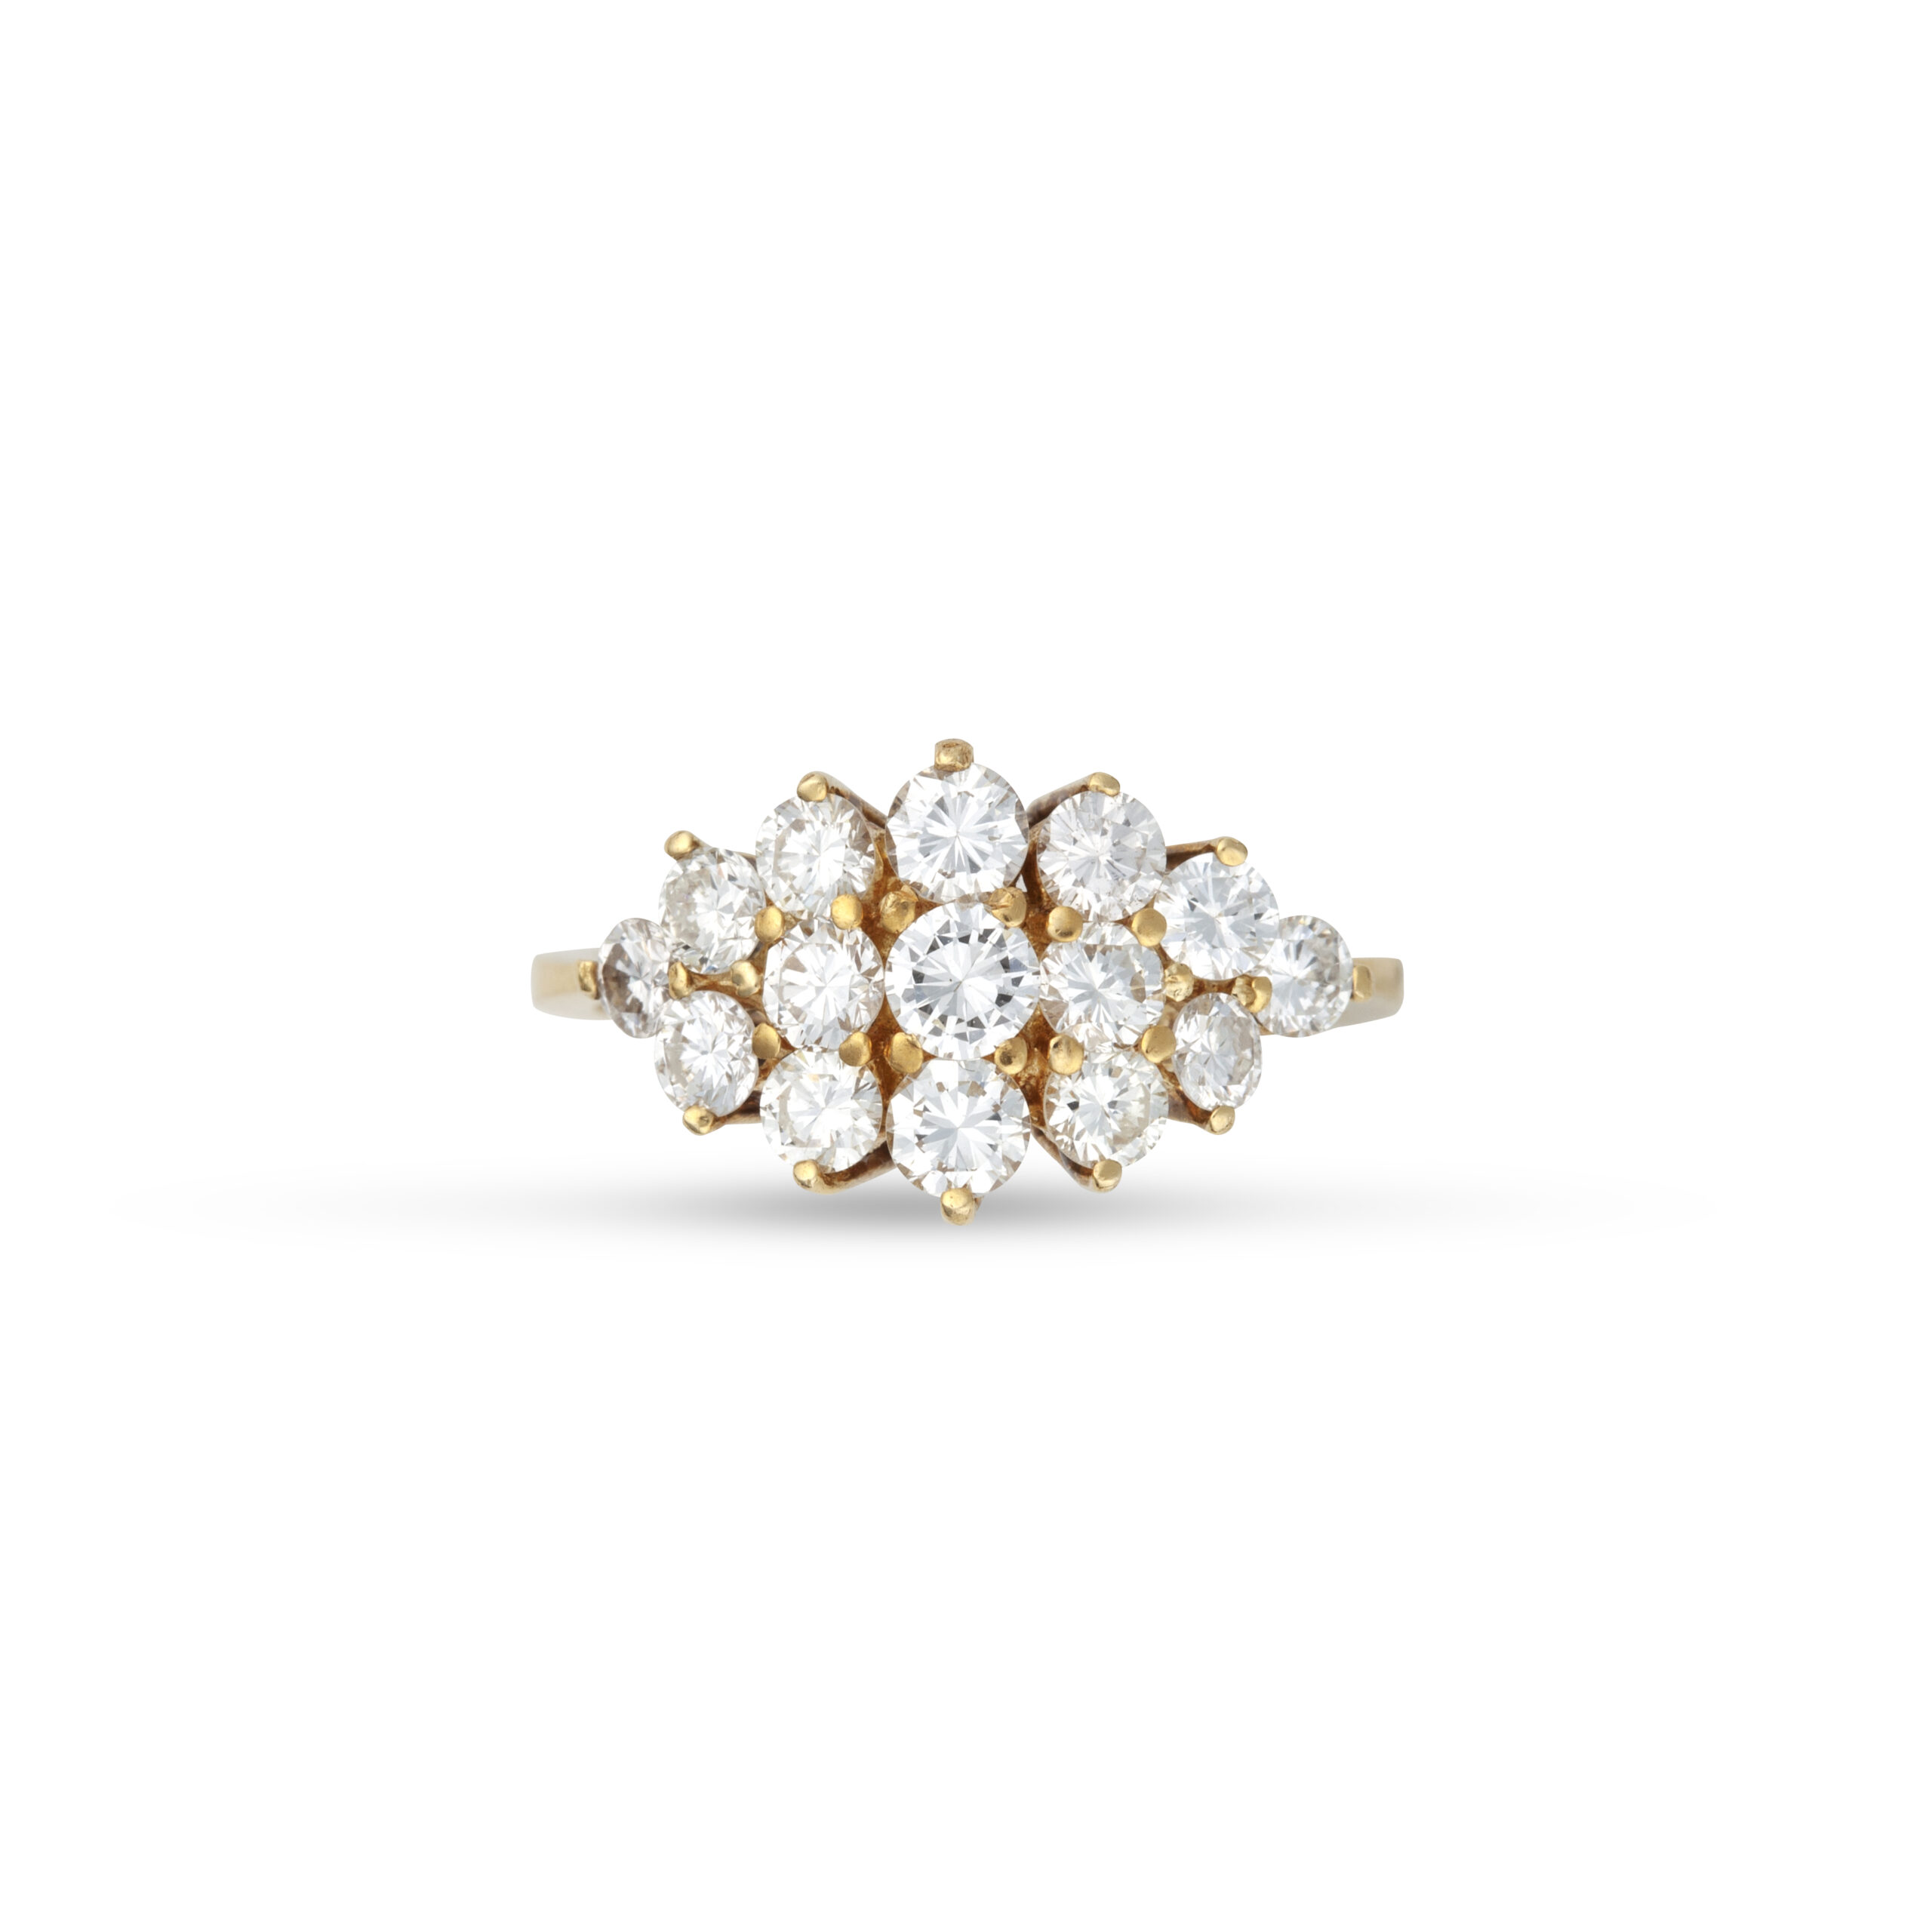 Πολύπετρο δαχτυλίδι από κίτρινο χρυσό Κ18 με στρογγυλά διαμάντια